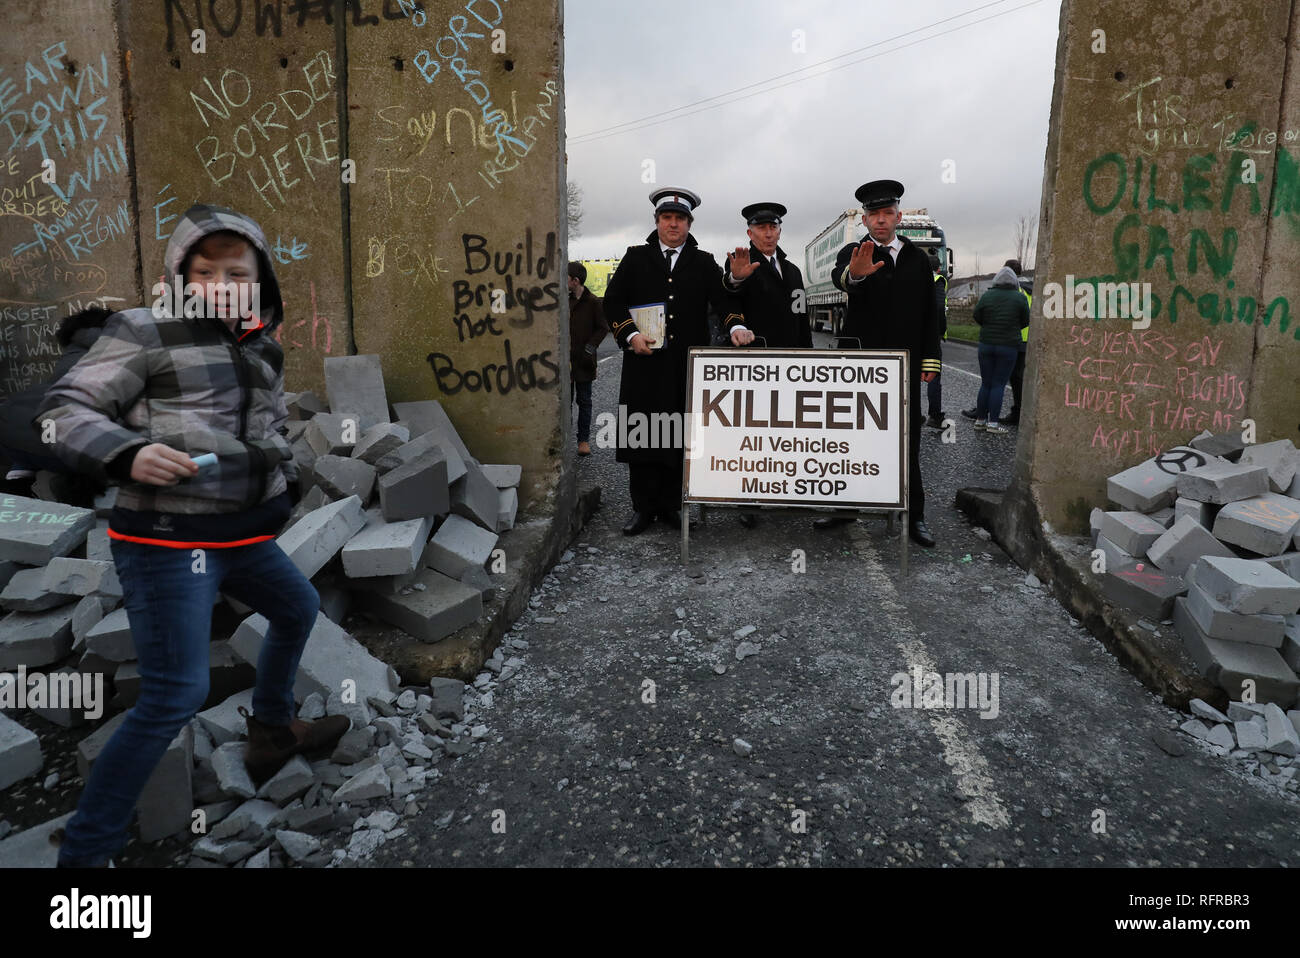 Una simulazione di checkpoint presidiati da attori vestiti come i funzionari della dogana costruito durante un anti-Brexit al rally di frontiera irlandese vicino Carrickcarnan, Co Louth. Foto Stock